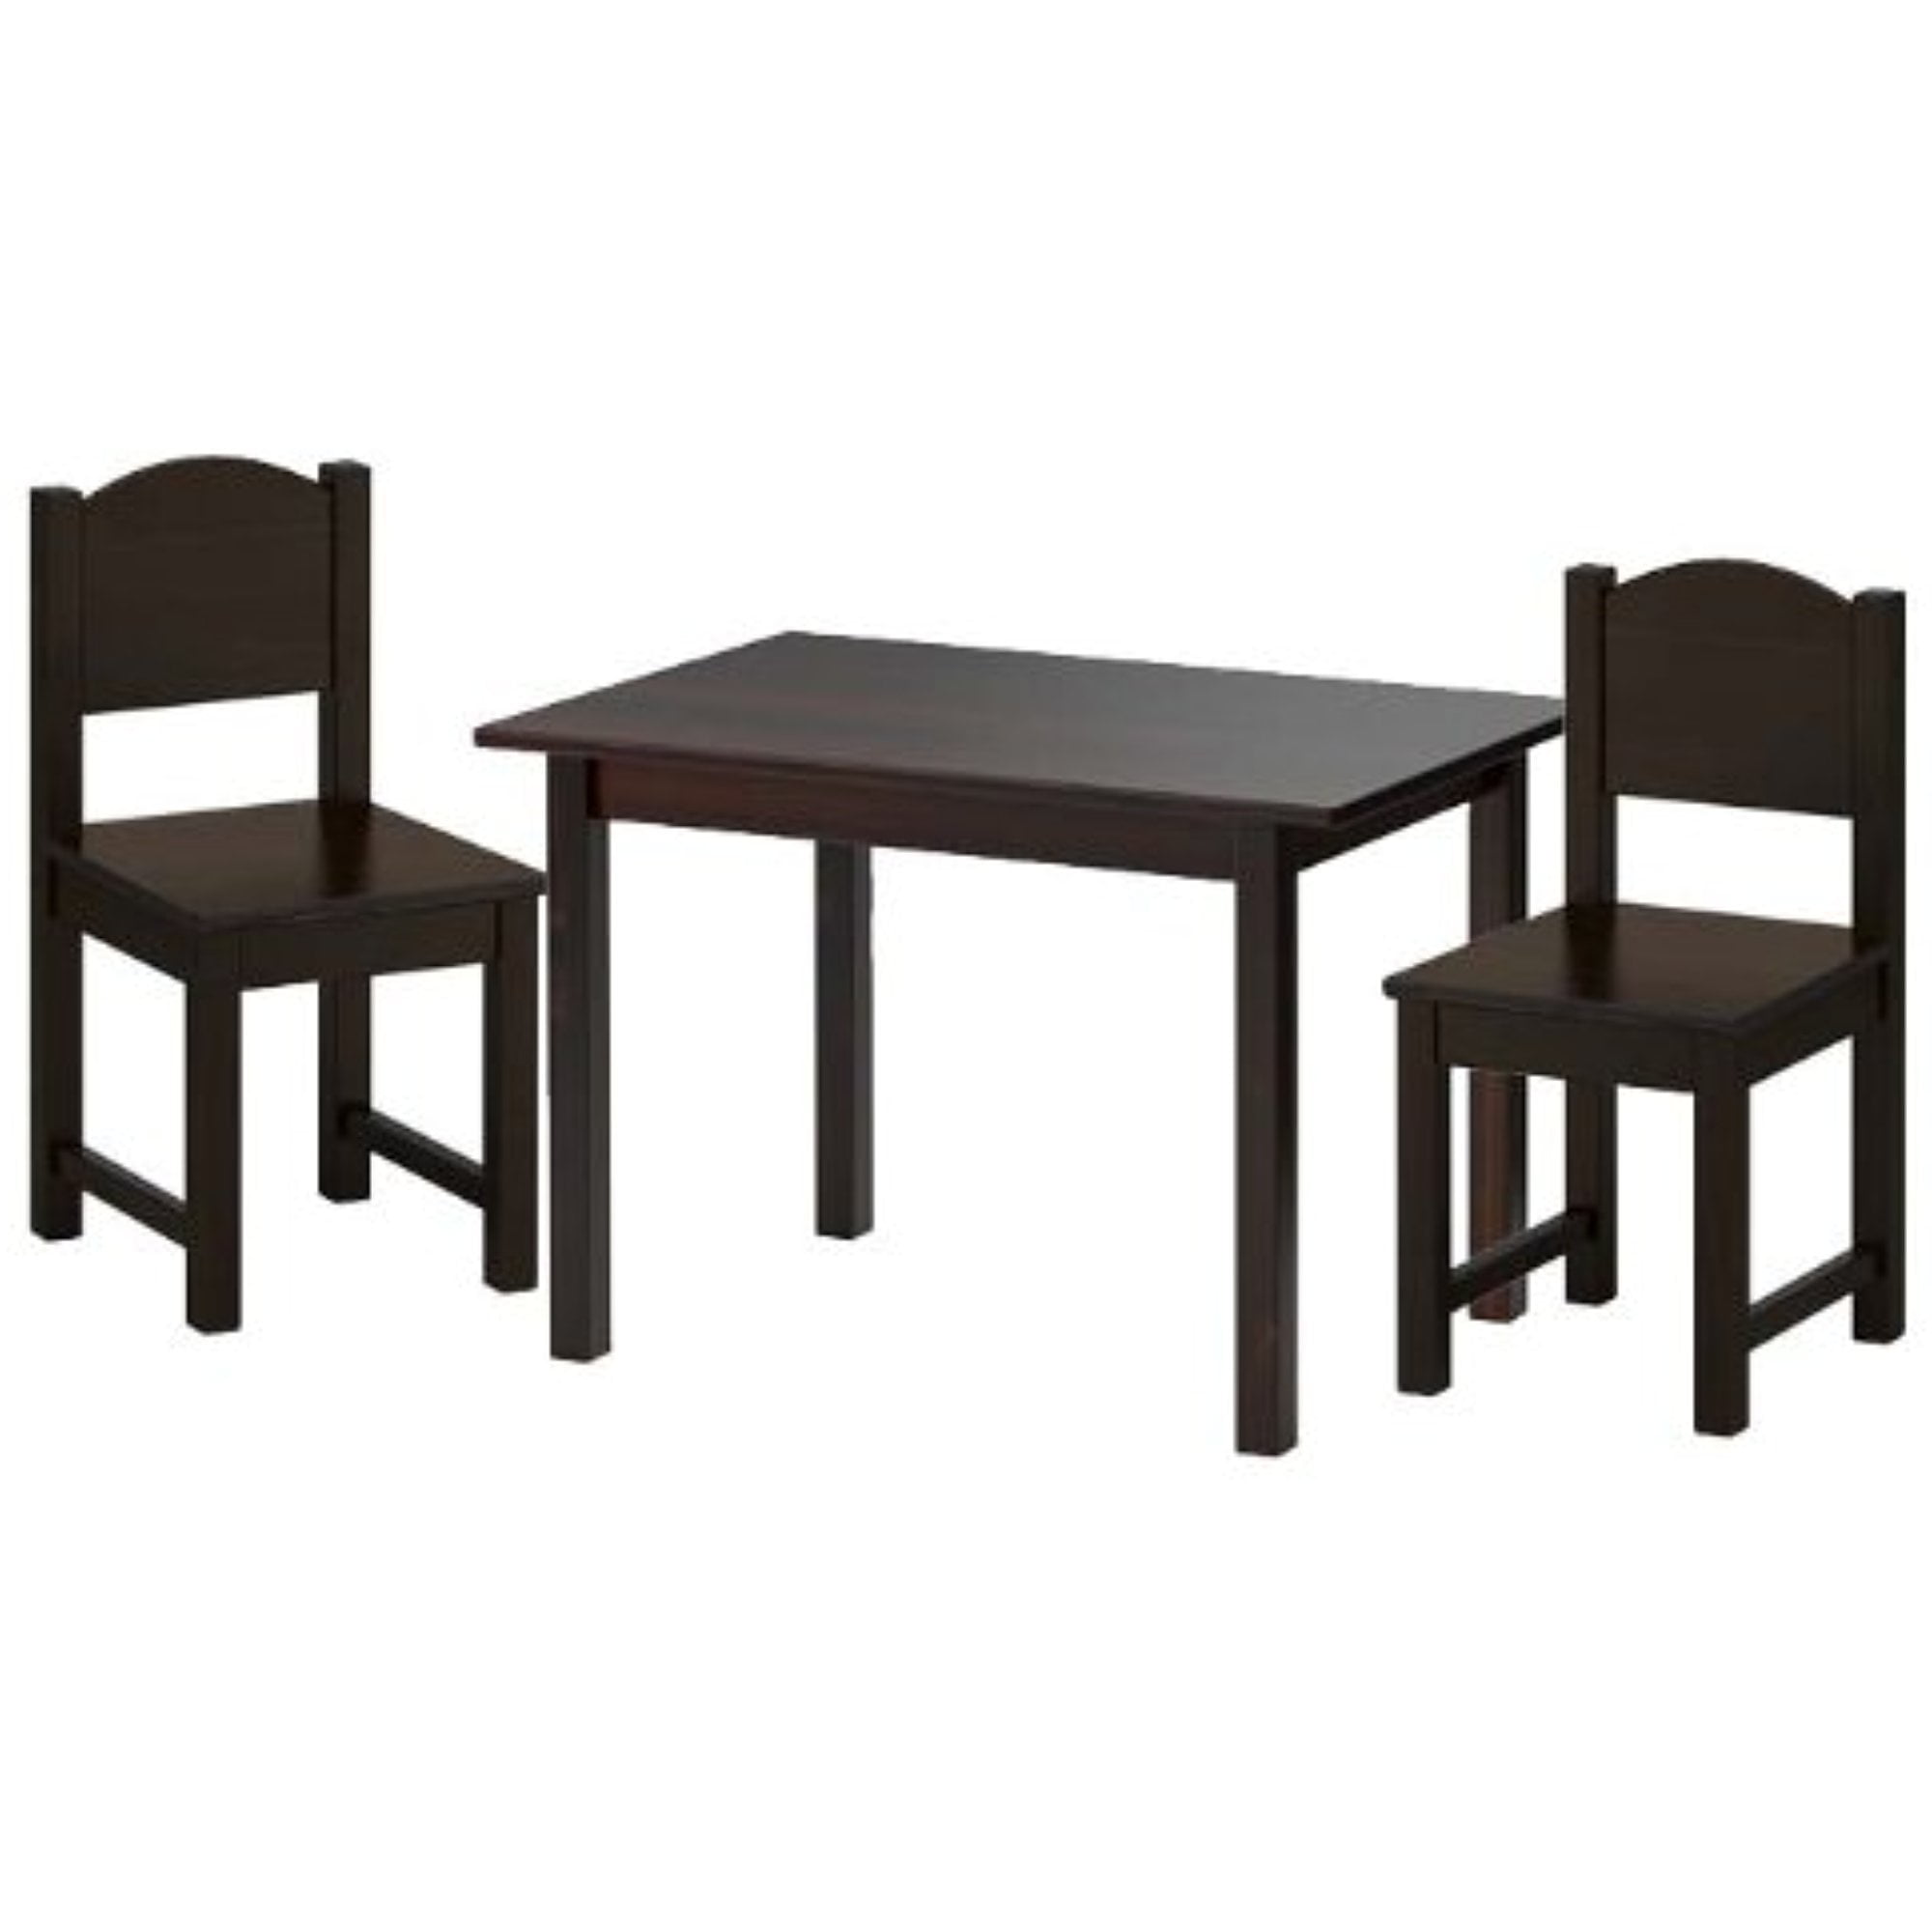 SUNDVIK Children's table Grey-brown or White 76x50 cm IKEA *Brand New* 